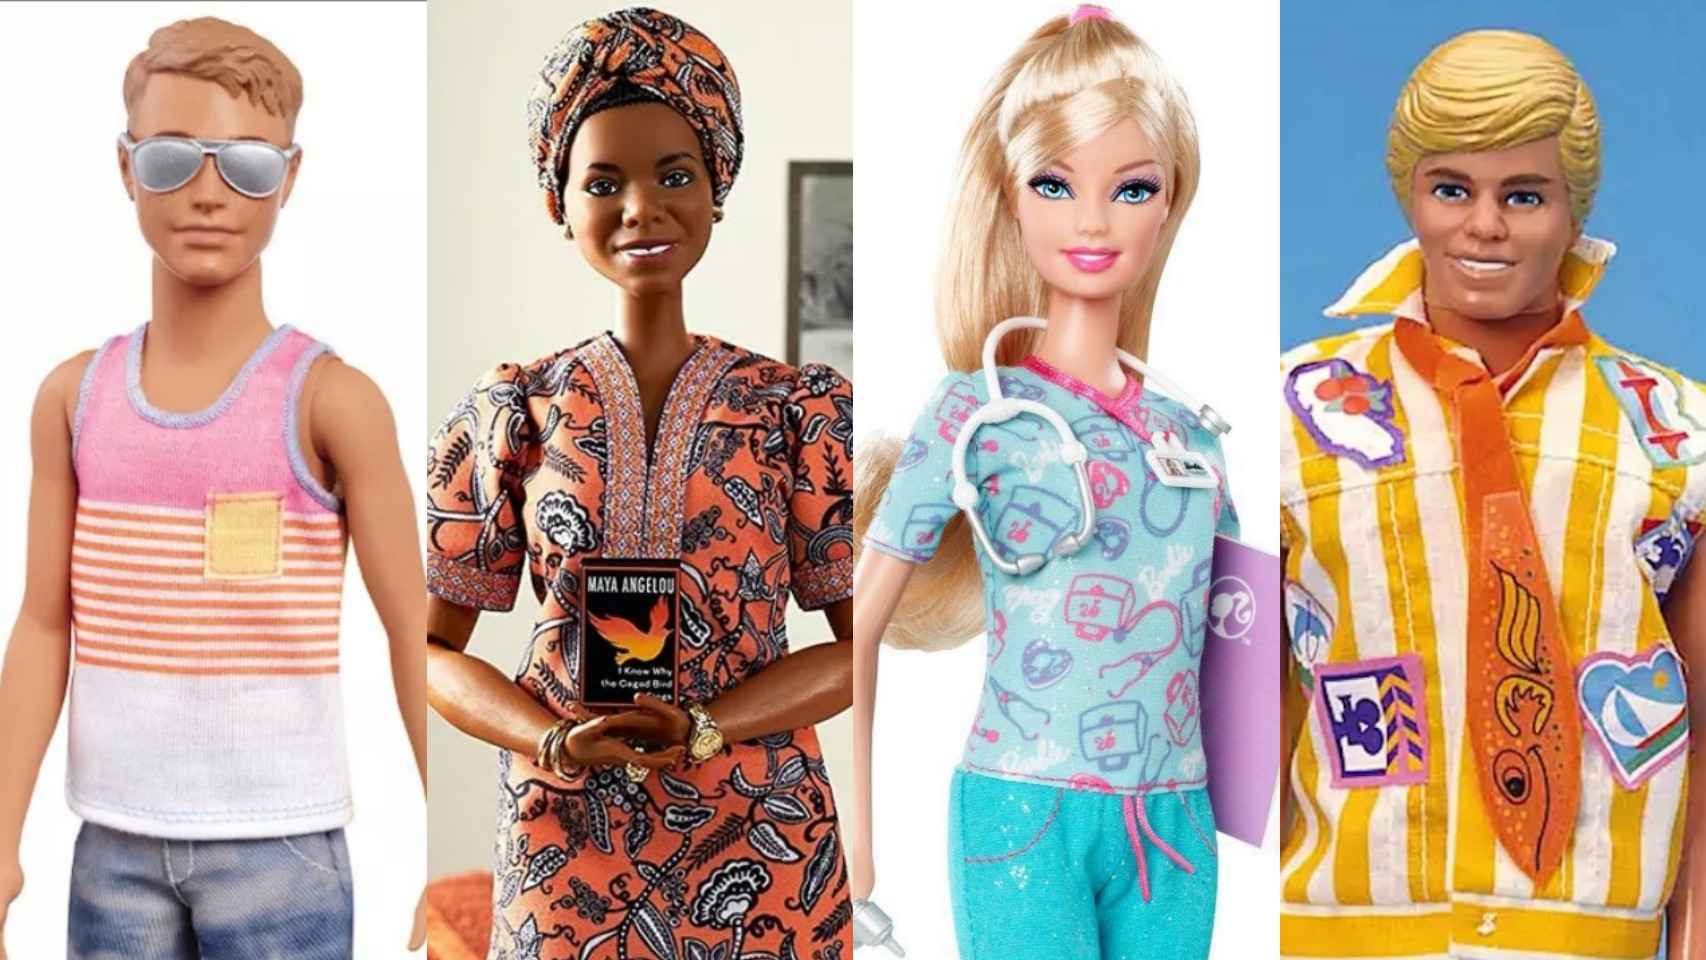 Ejemplos de Barbies y Kens que aparecen en la película.